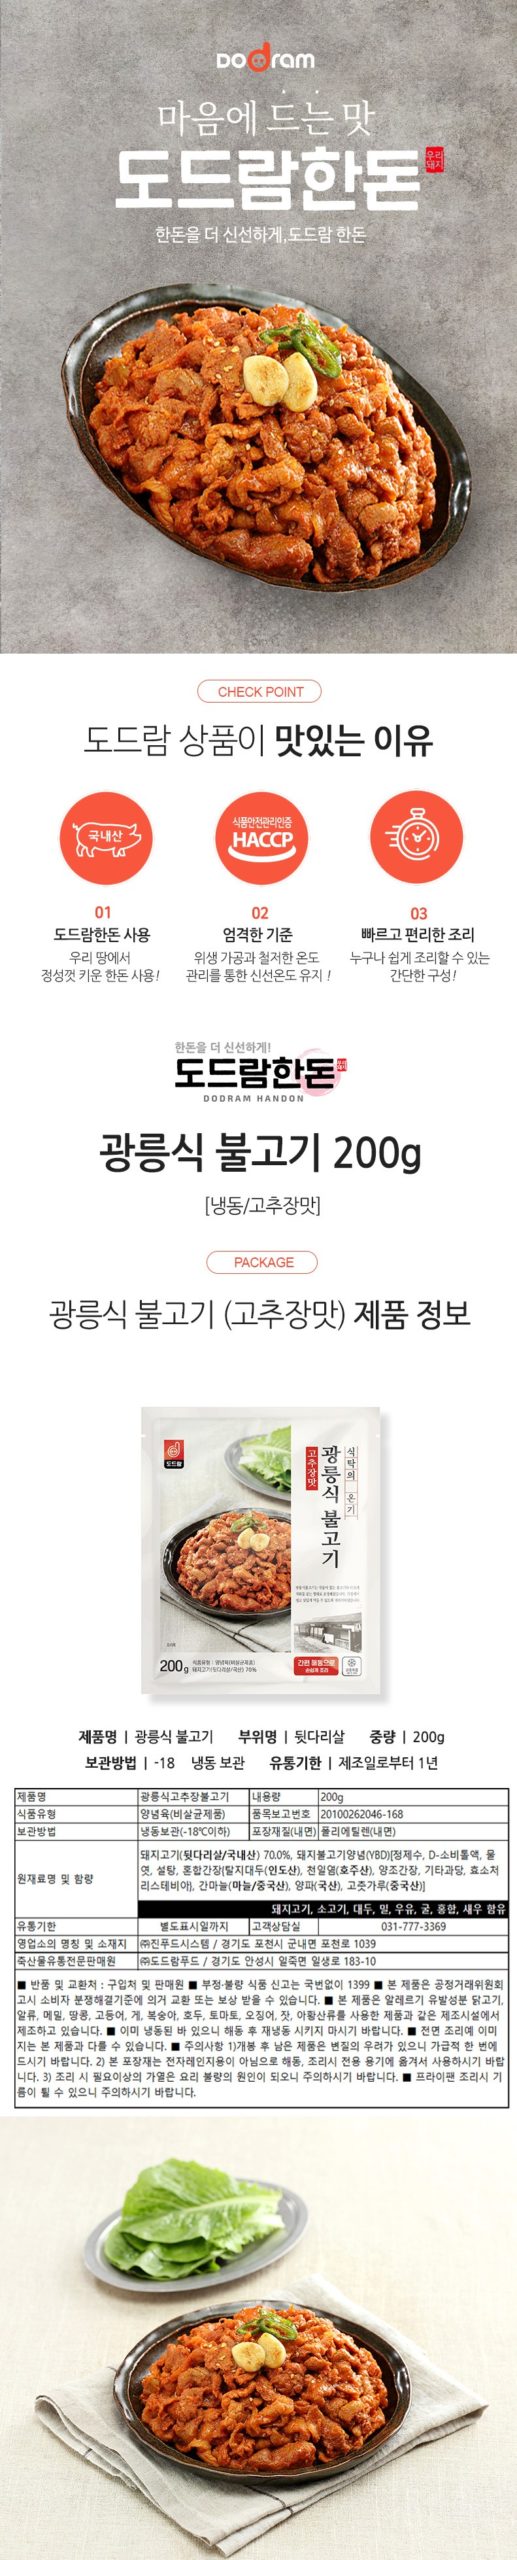 韓國食品-[Dodram] 光陵式烤肉 (辣味) 200g